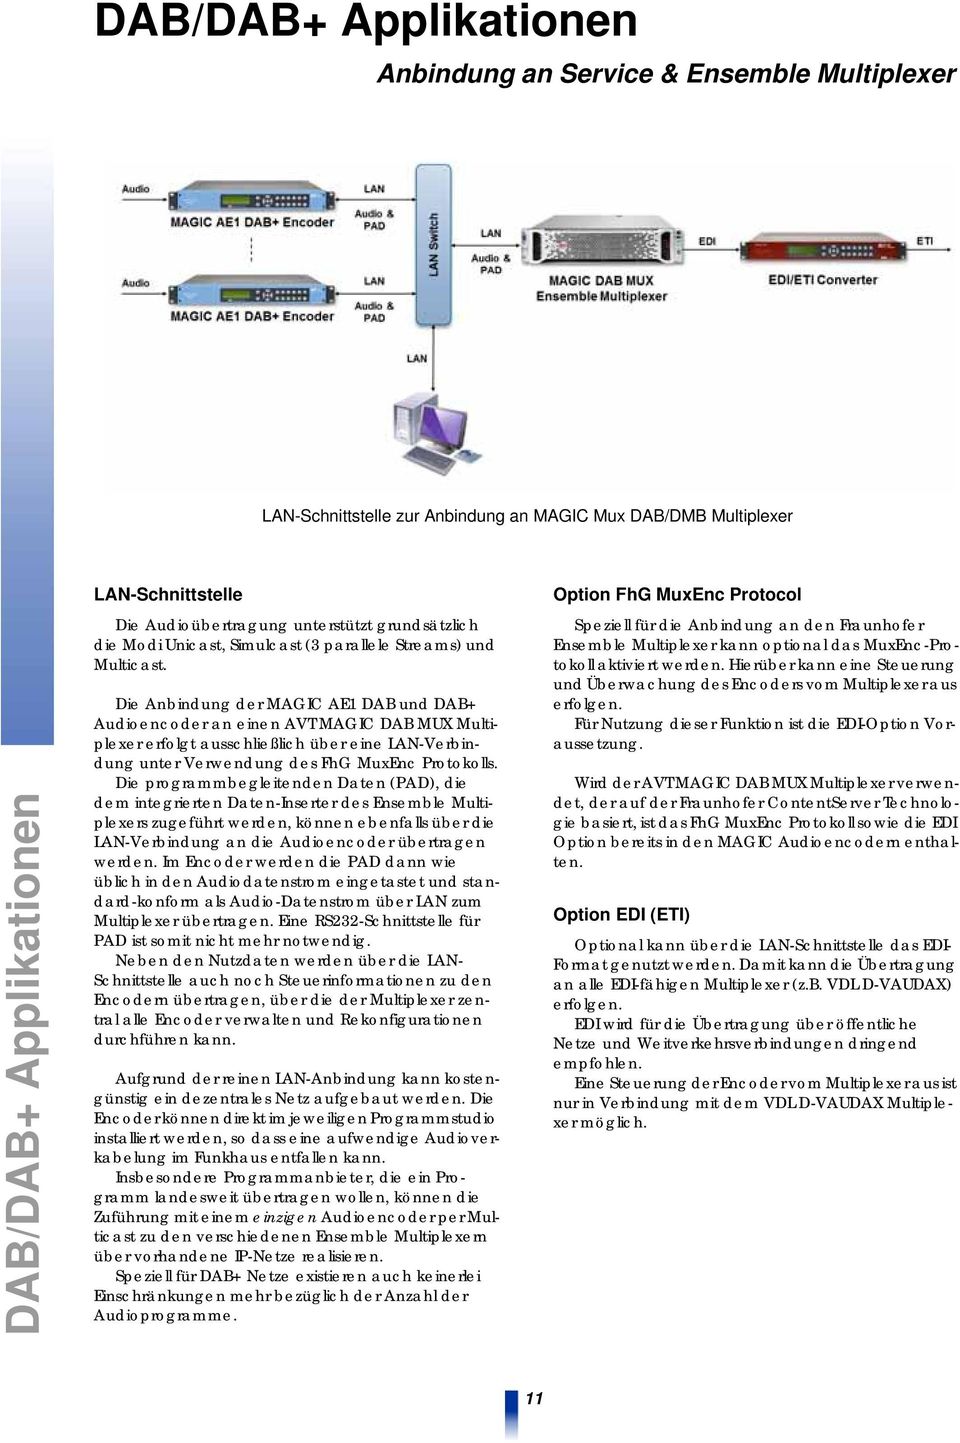 Die Anbindung der MAGIC AE1 DAB und DAB+ Audioencoder an einen AVT MAGIC DAB MUX Multiplexer erfolgt ausschließlich über eine LAN-Verbindung unter Verwendung des FhG MuxEnc Protokolls.